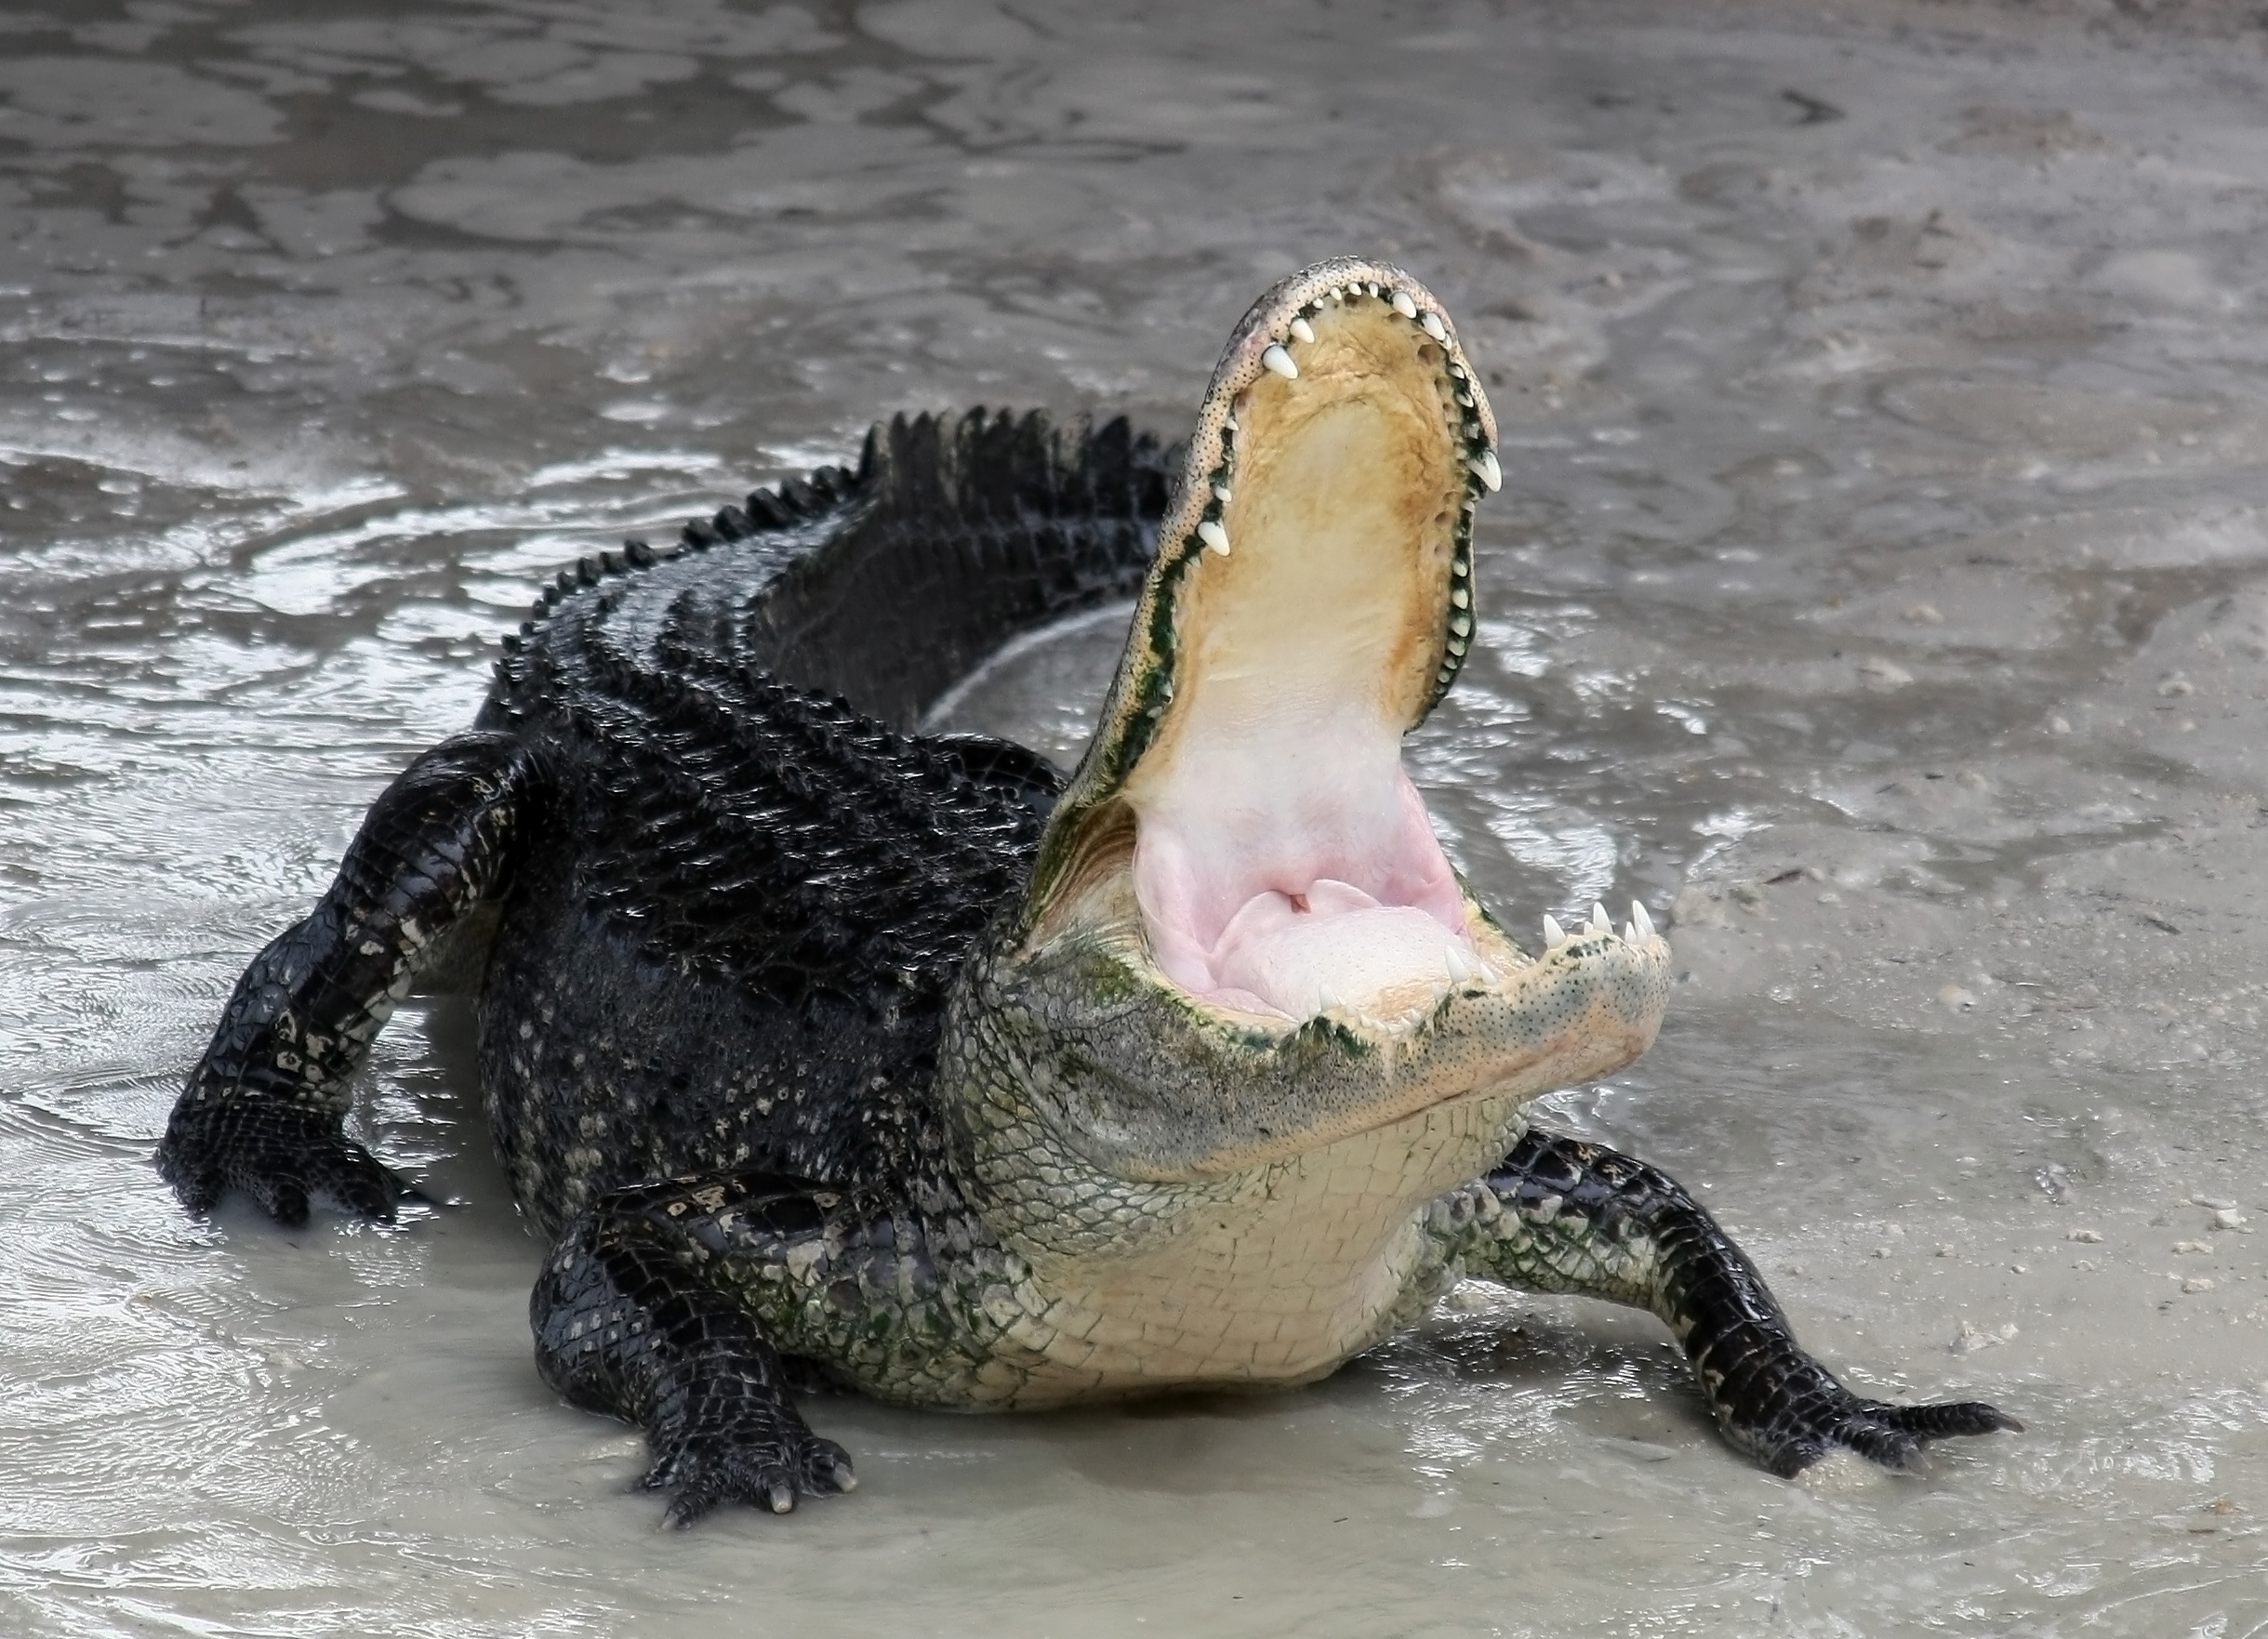 Alligator_mississippiensis_defensive.jpg